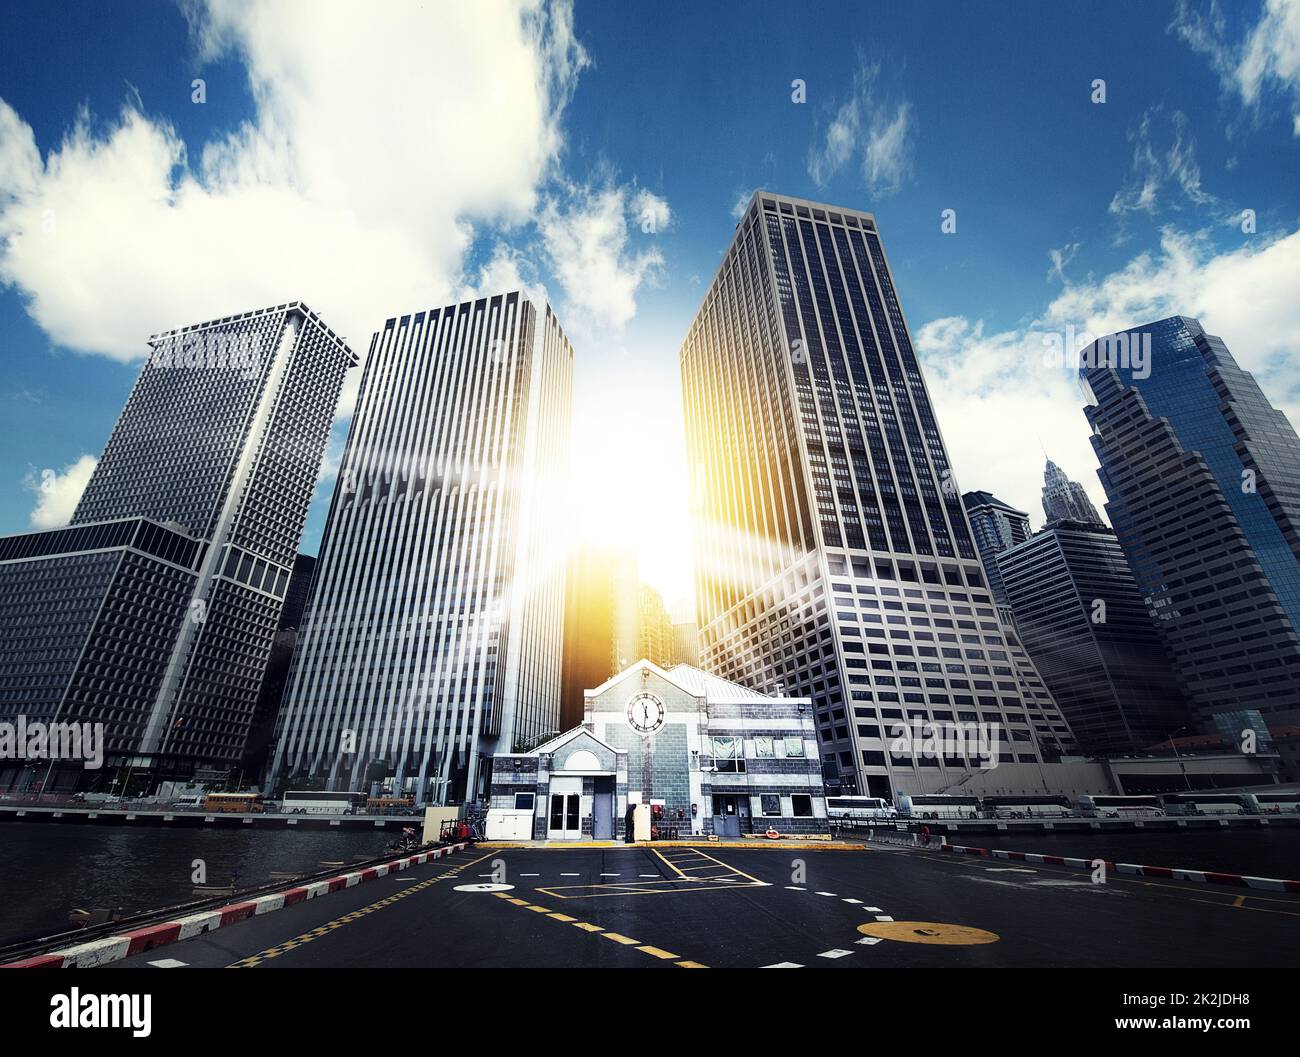 Au cœur du monde des affaires. Photo de grands bâtiments dans un quartier d'affaires urbain. Banque D'Images